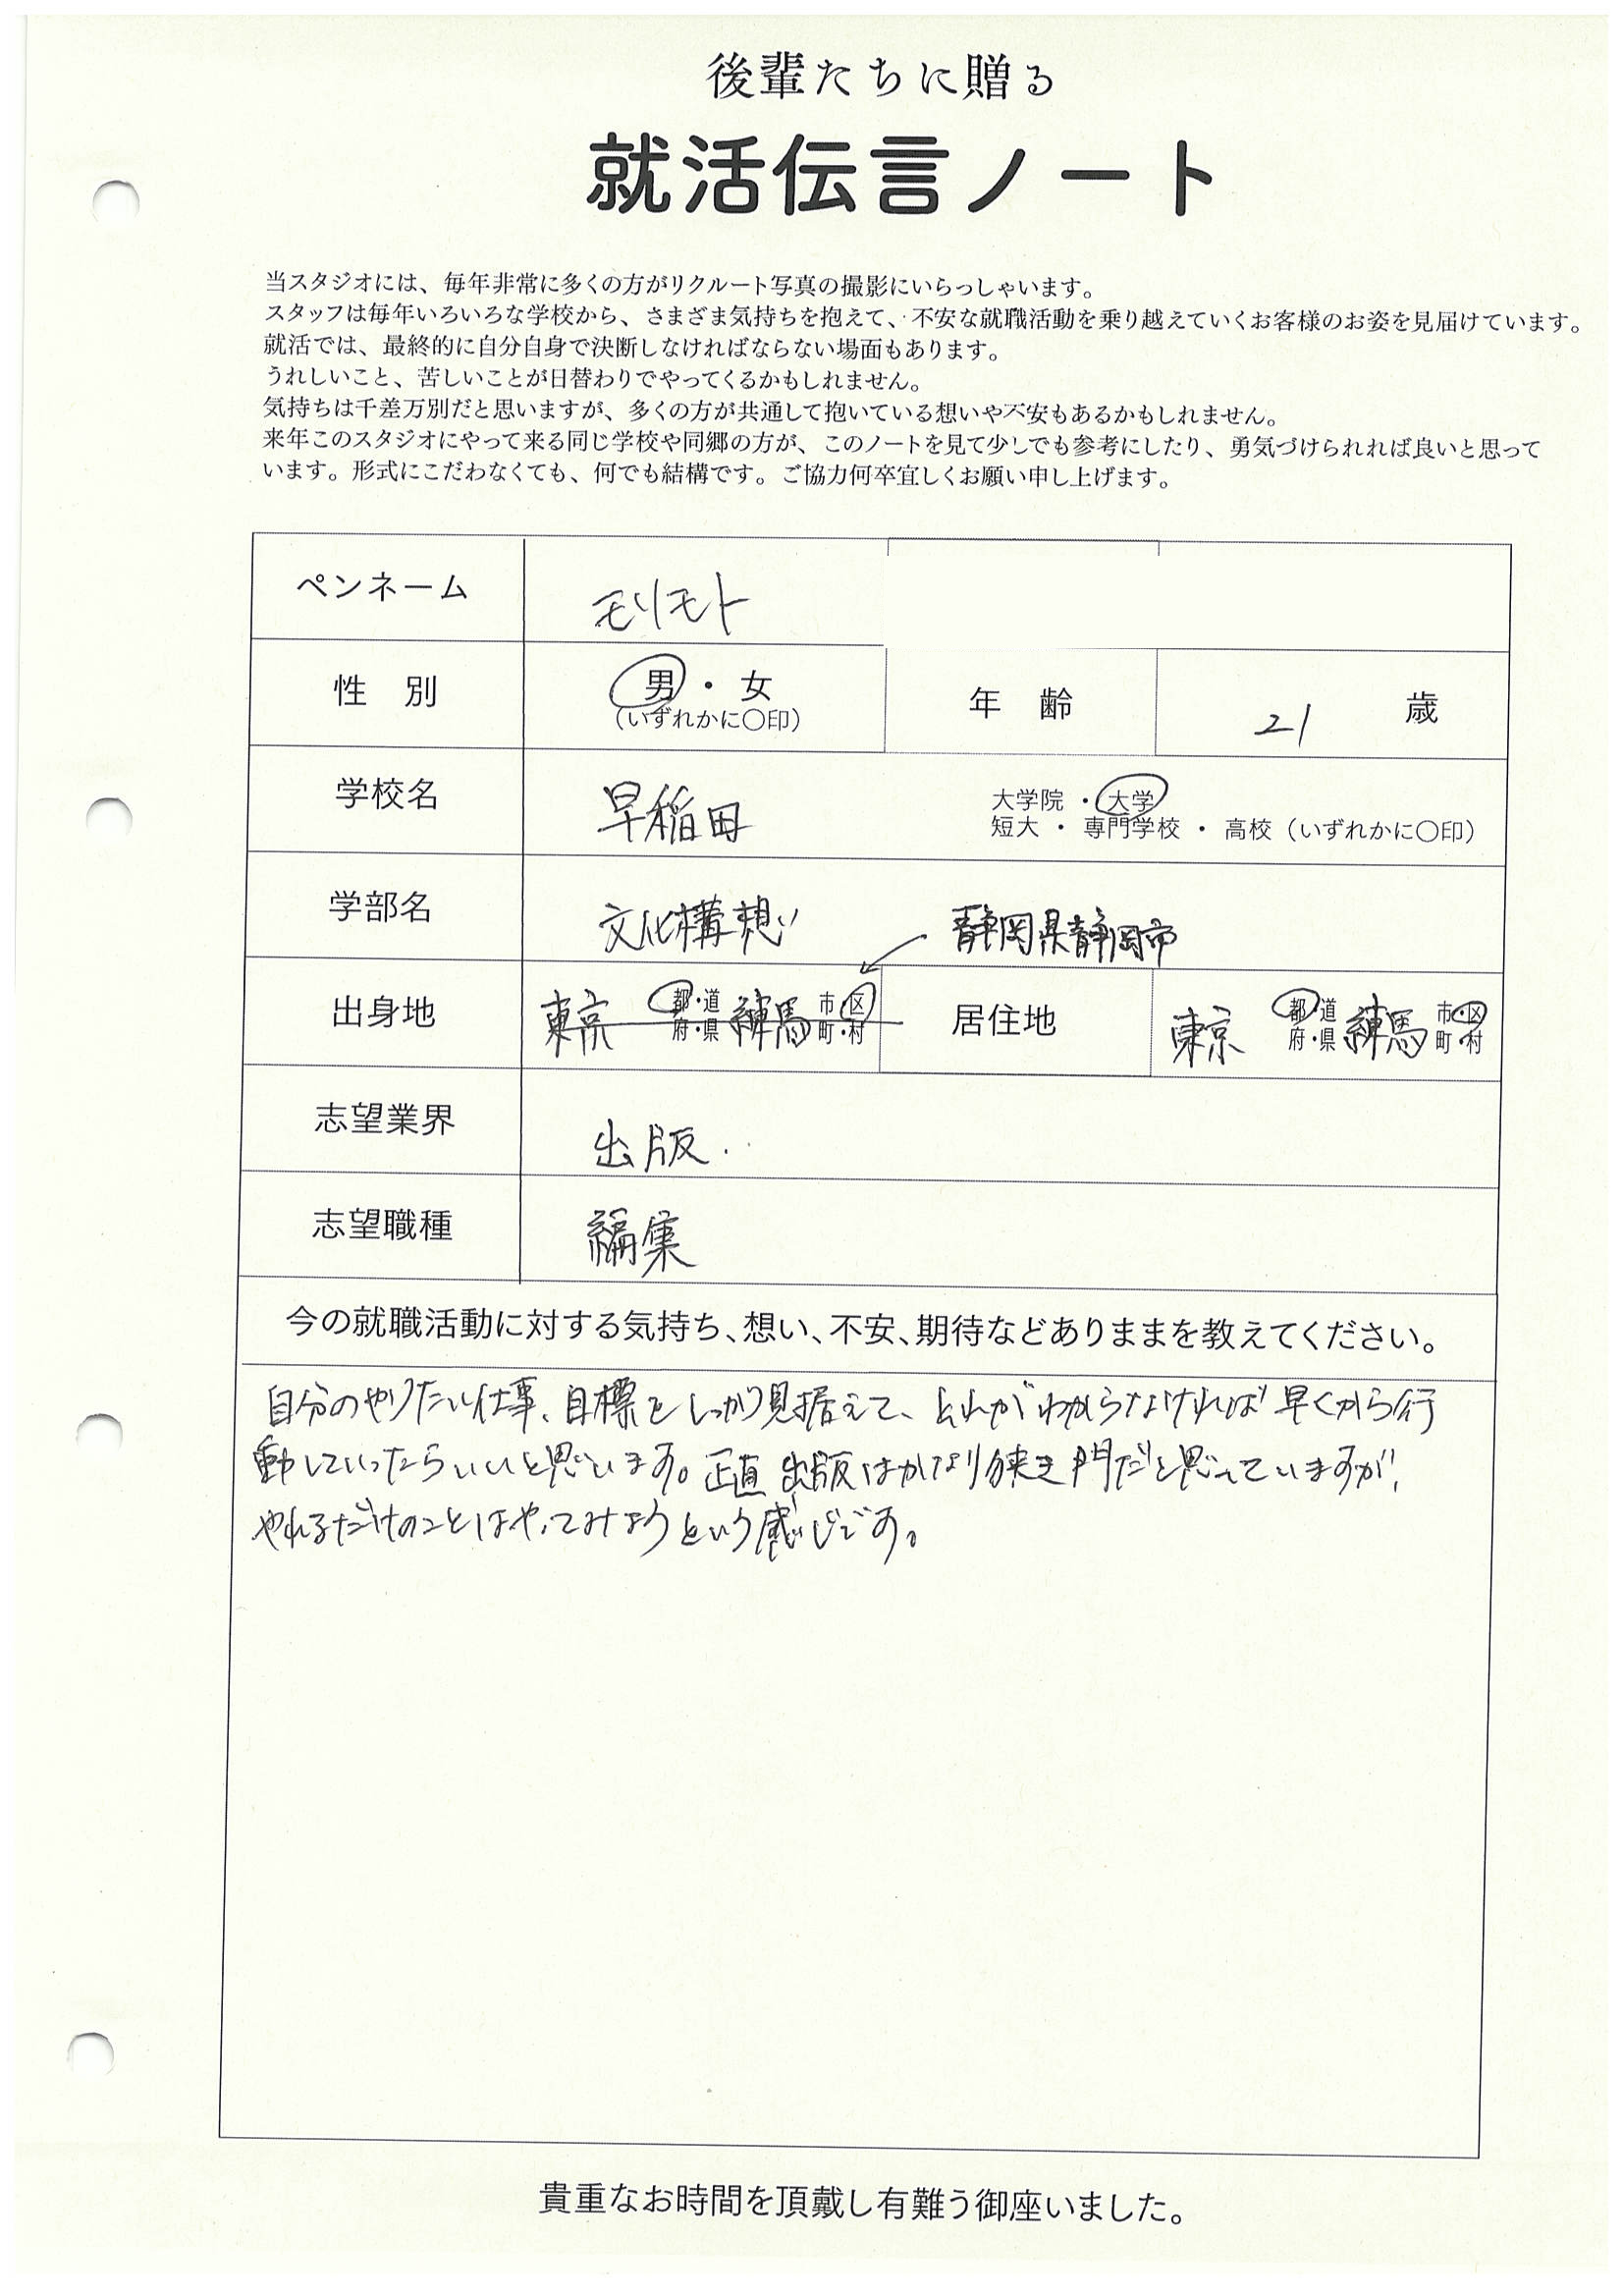 早稲田大学 文化構想学部 モリモトさんの直筆メッセージ リクルートフォトスタジオで就活証明写真を撮影